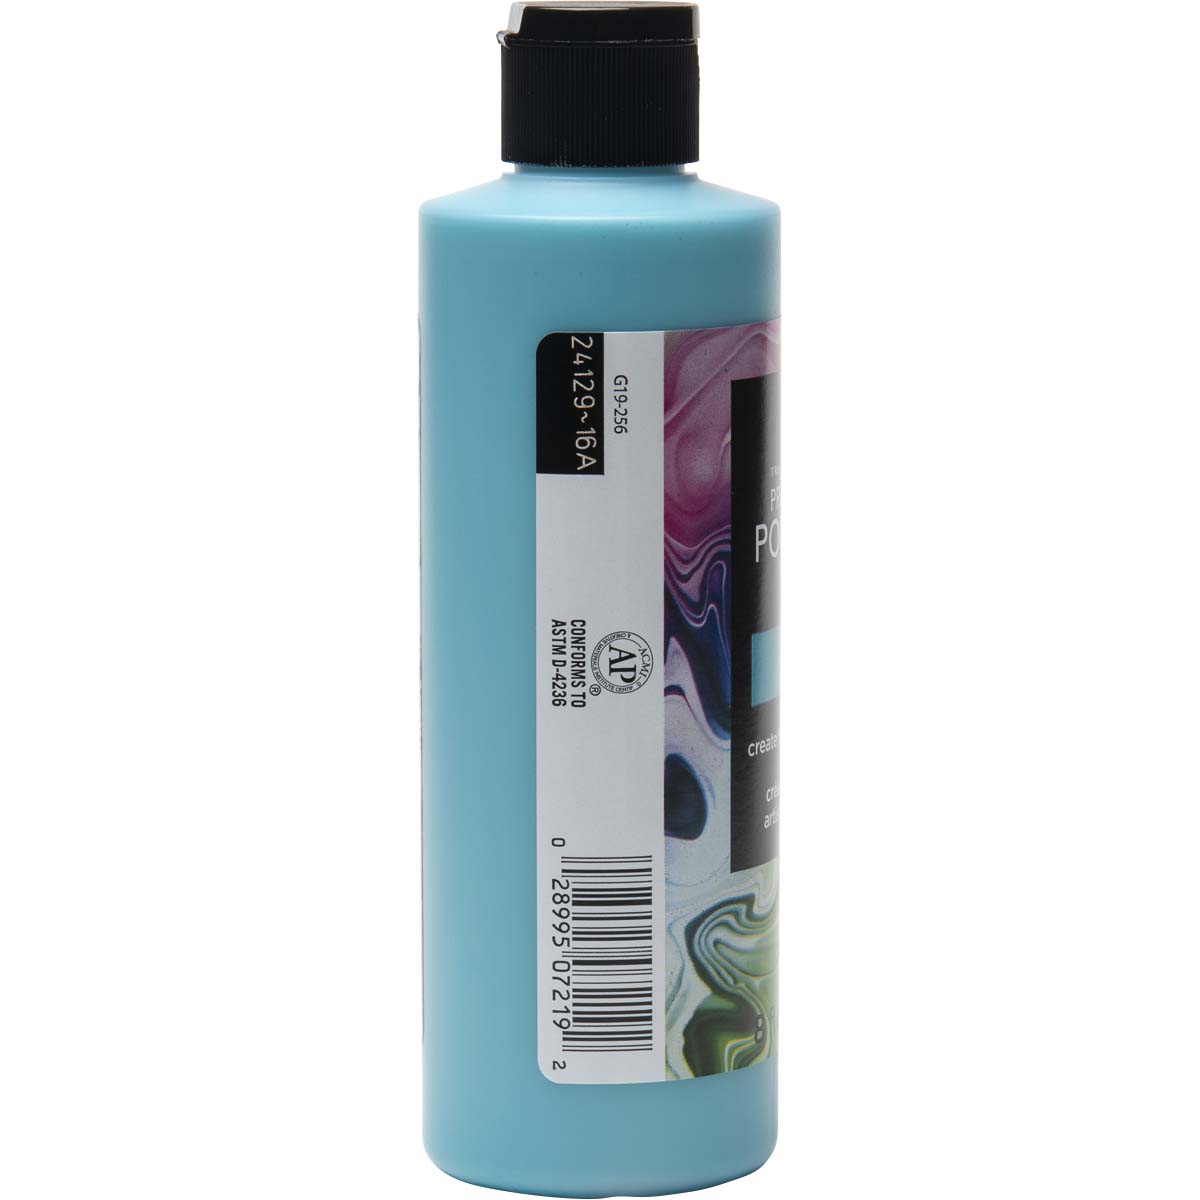 FolkArt ® Pre-mixed Pouring Paint - Aqua, 8 oz. - 7219